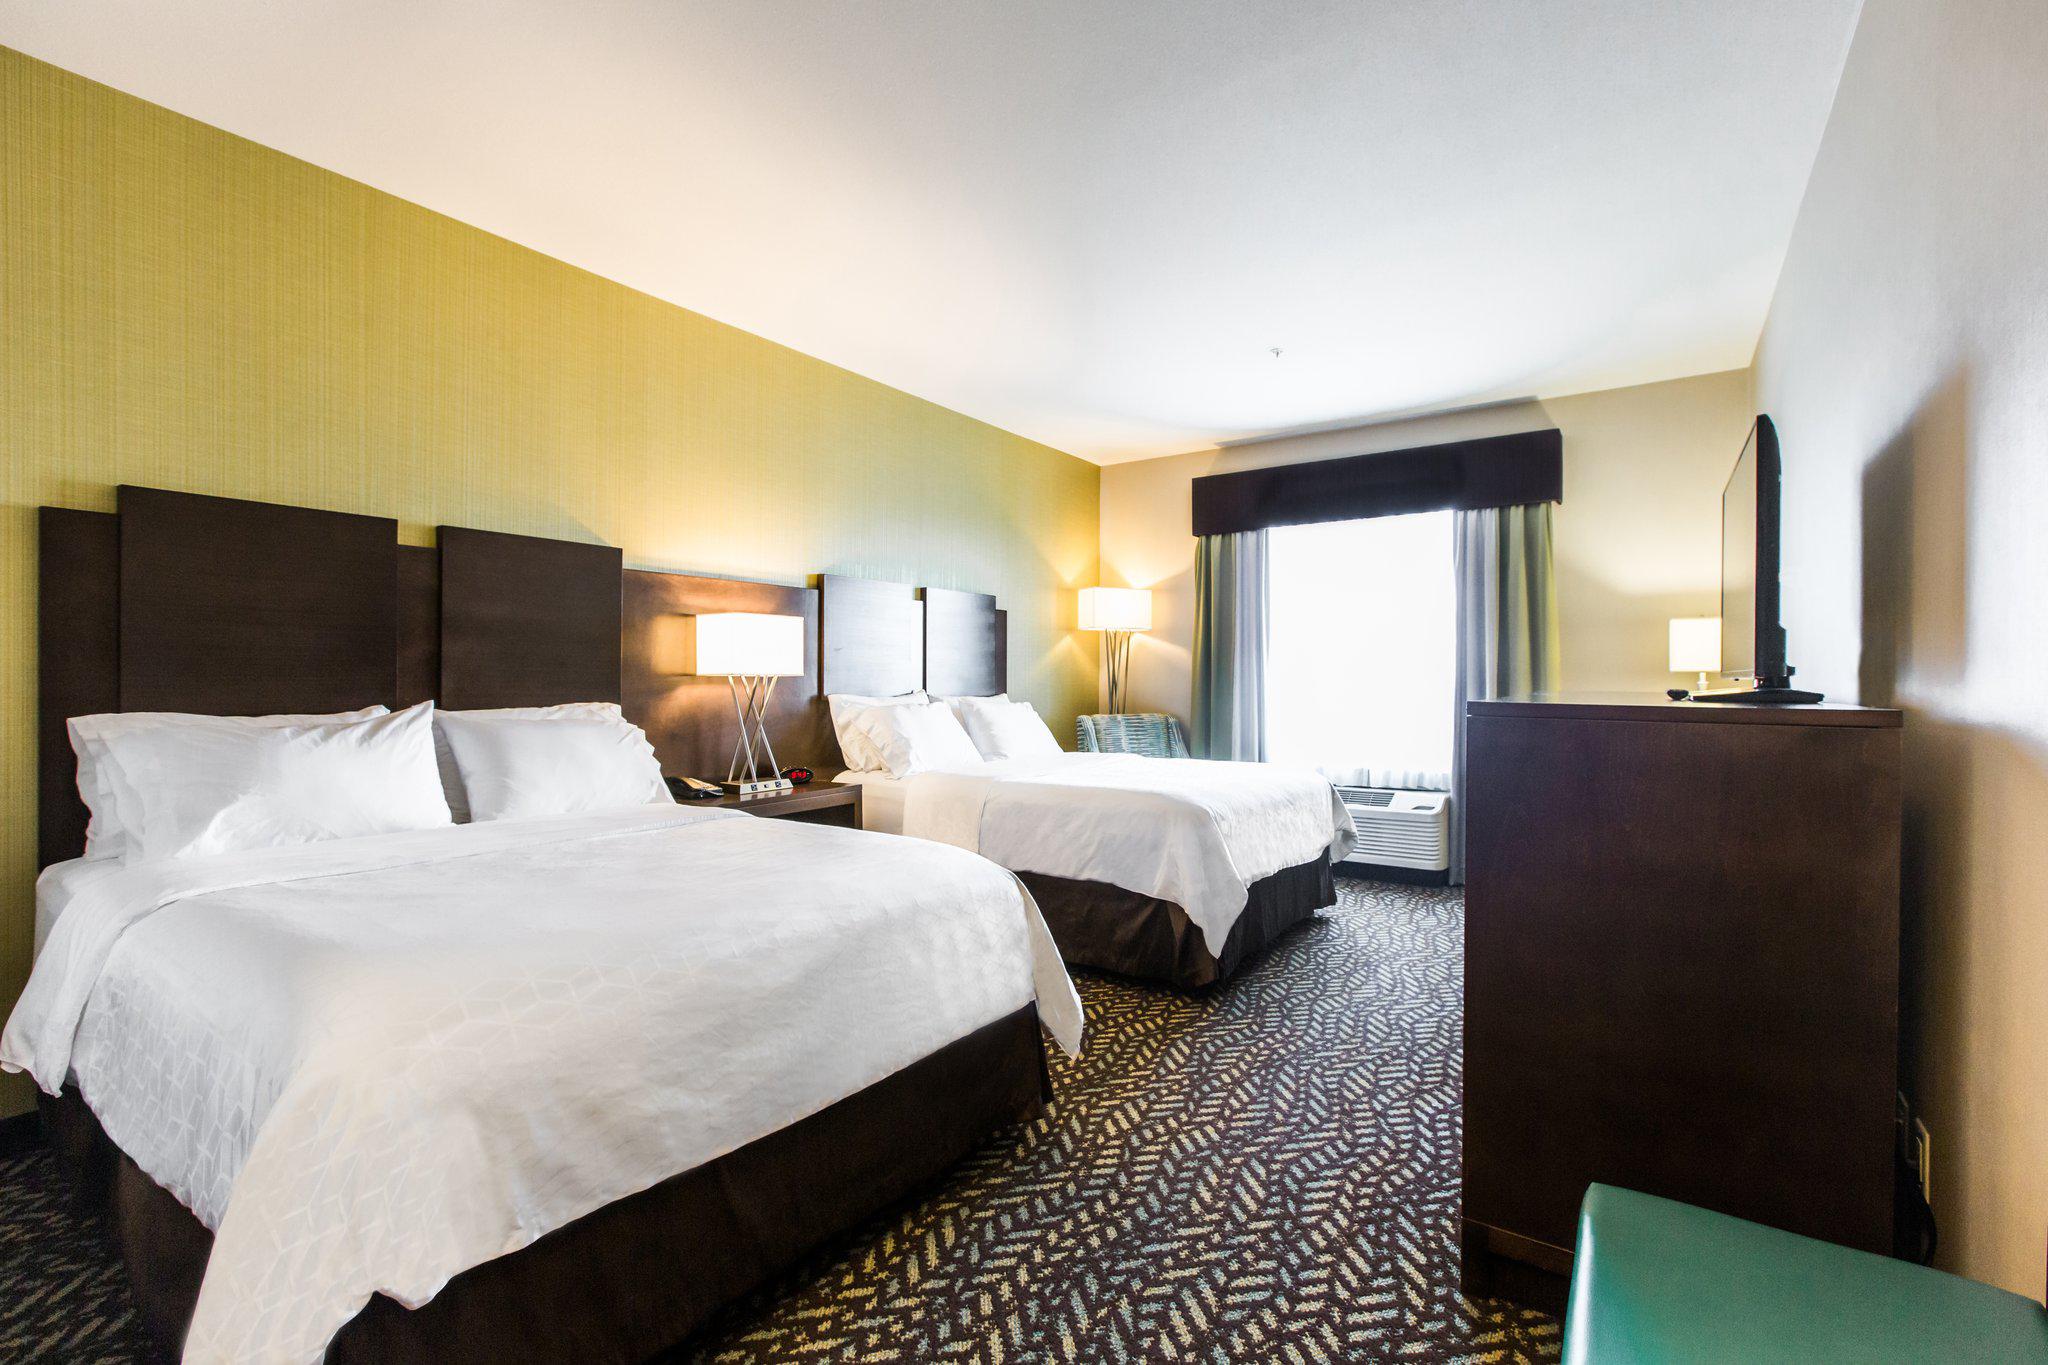 Holiday Inn Express & Suites Spruce Grove - Stony Plain, an IHG Hotel Spruce Grove (780)571-1101